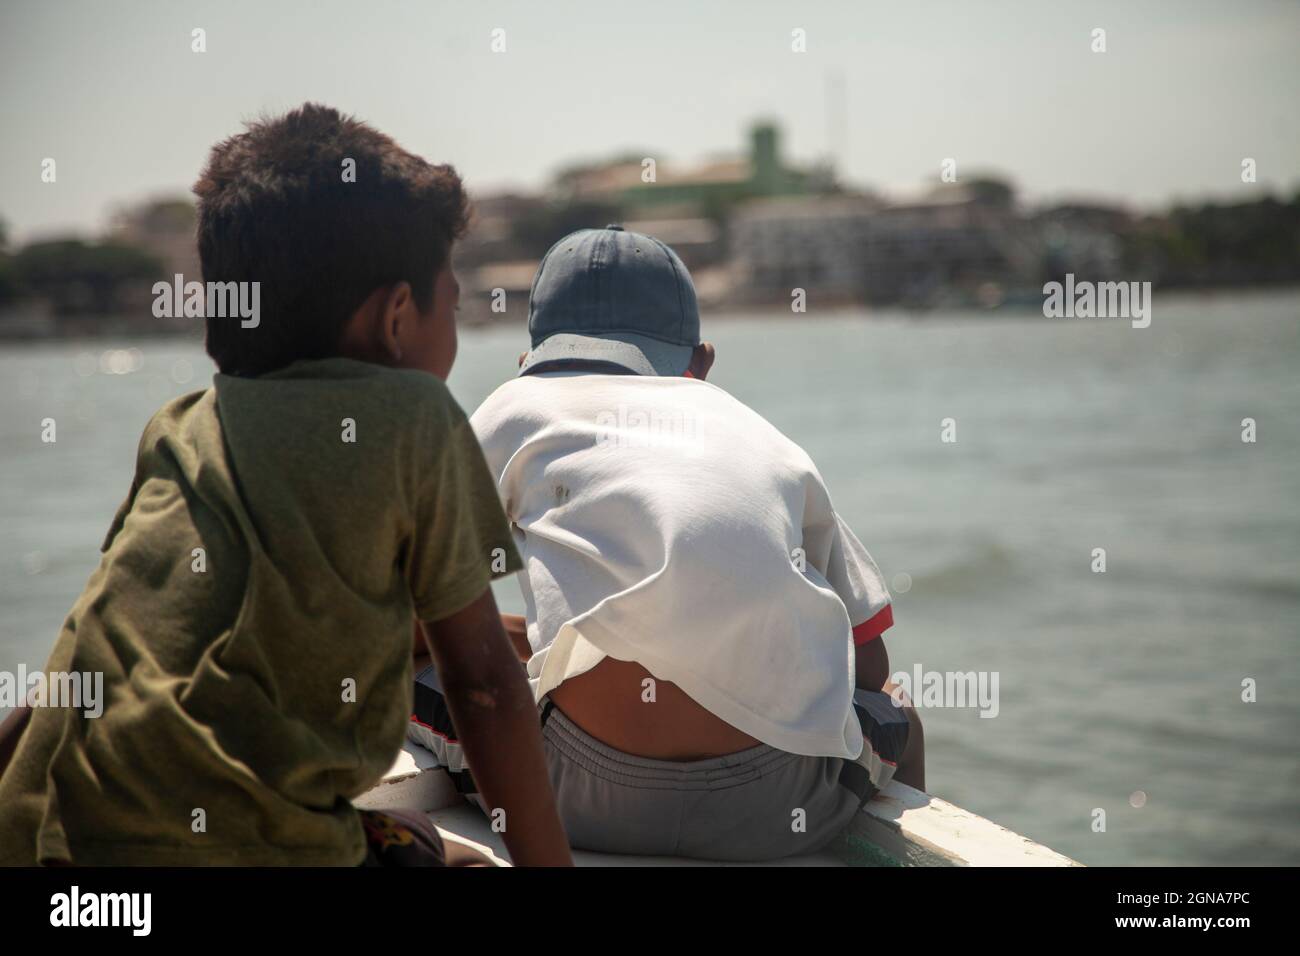 Zwei arme Kinder, die vor einem Fischerboot fahren Armut im Land der Dritten Welt Stockfoto